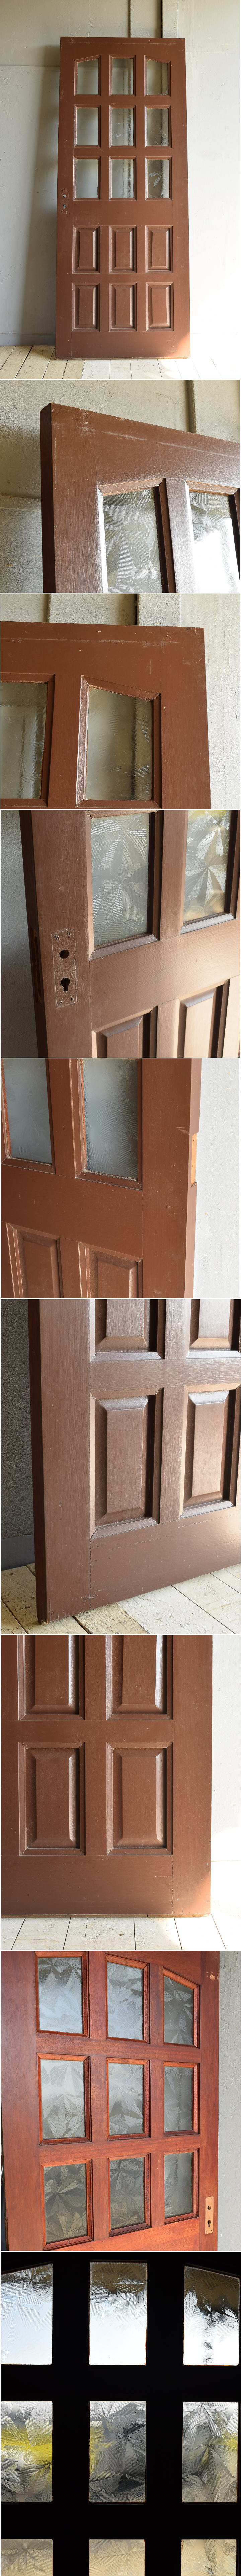 イギリス アンティーク ガラス入り木製ドア 扉 建具 7212